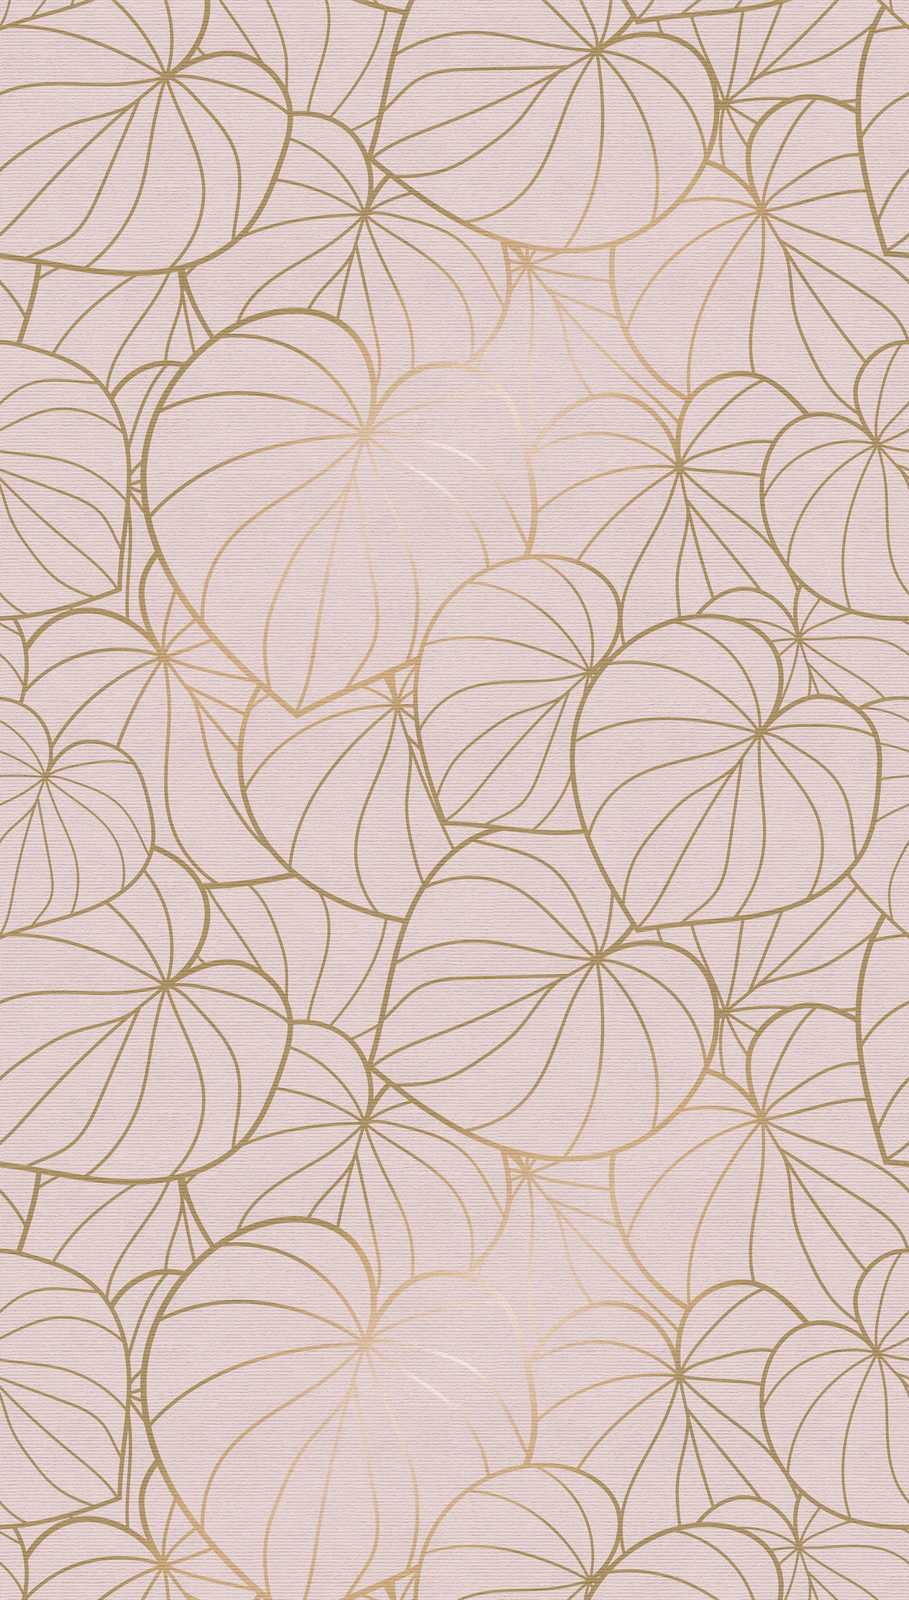             papel pintado novedad | papel pintado motivo hojas oro y beige line art
        